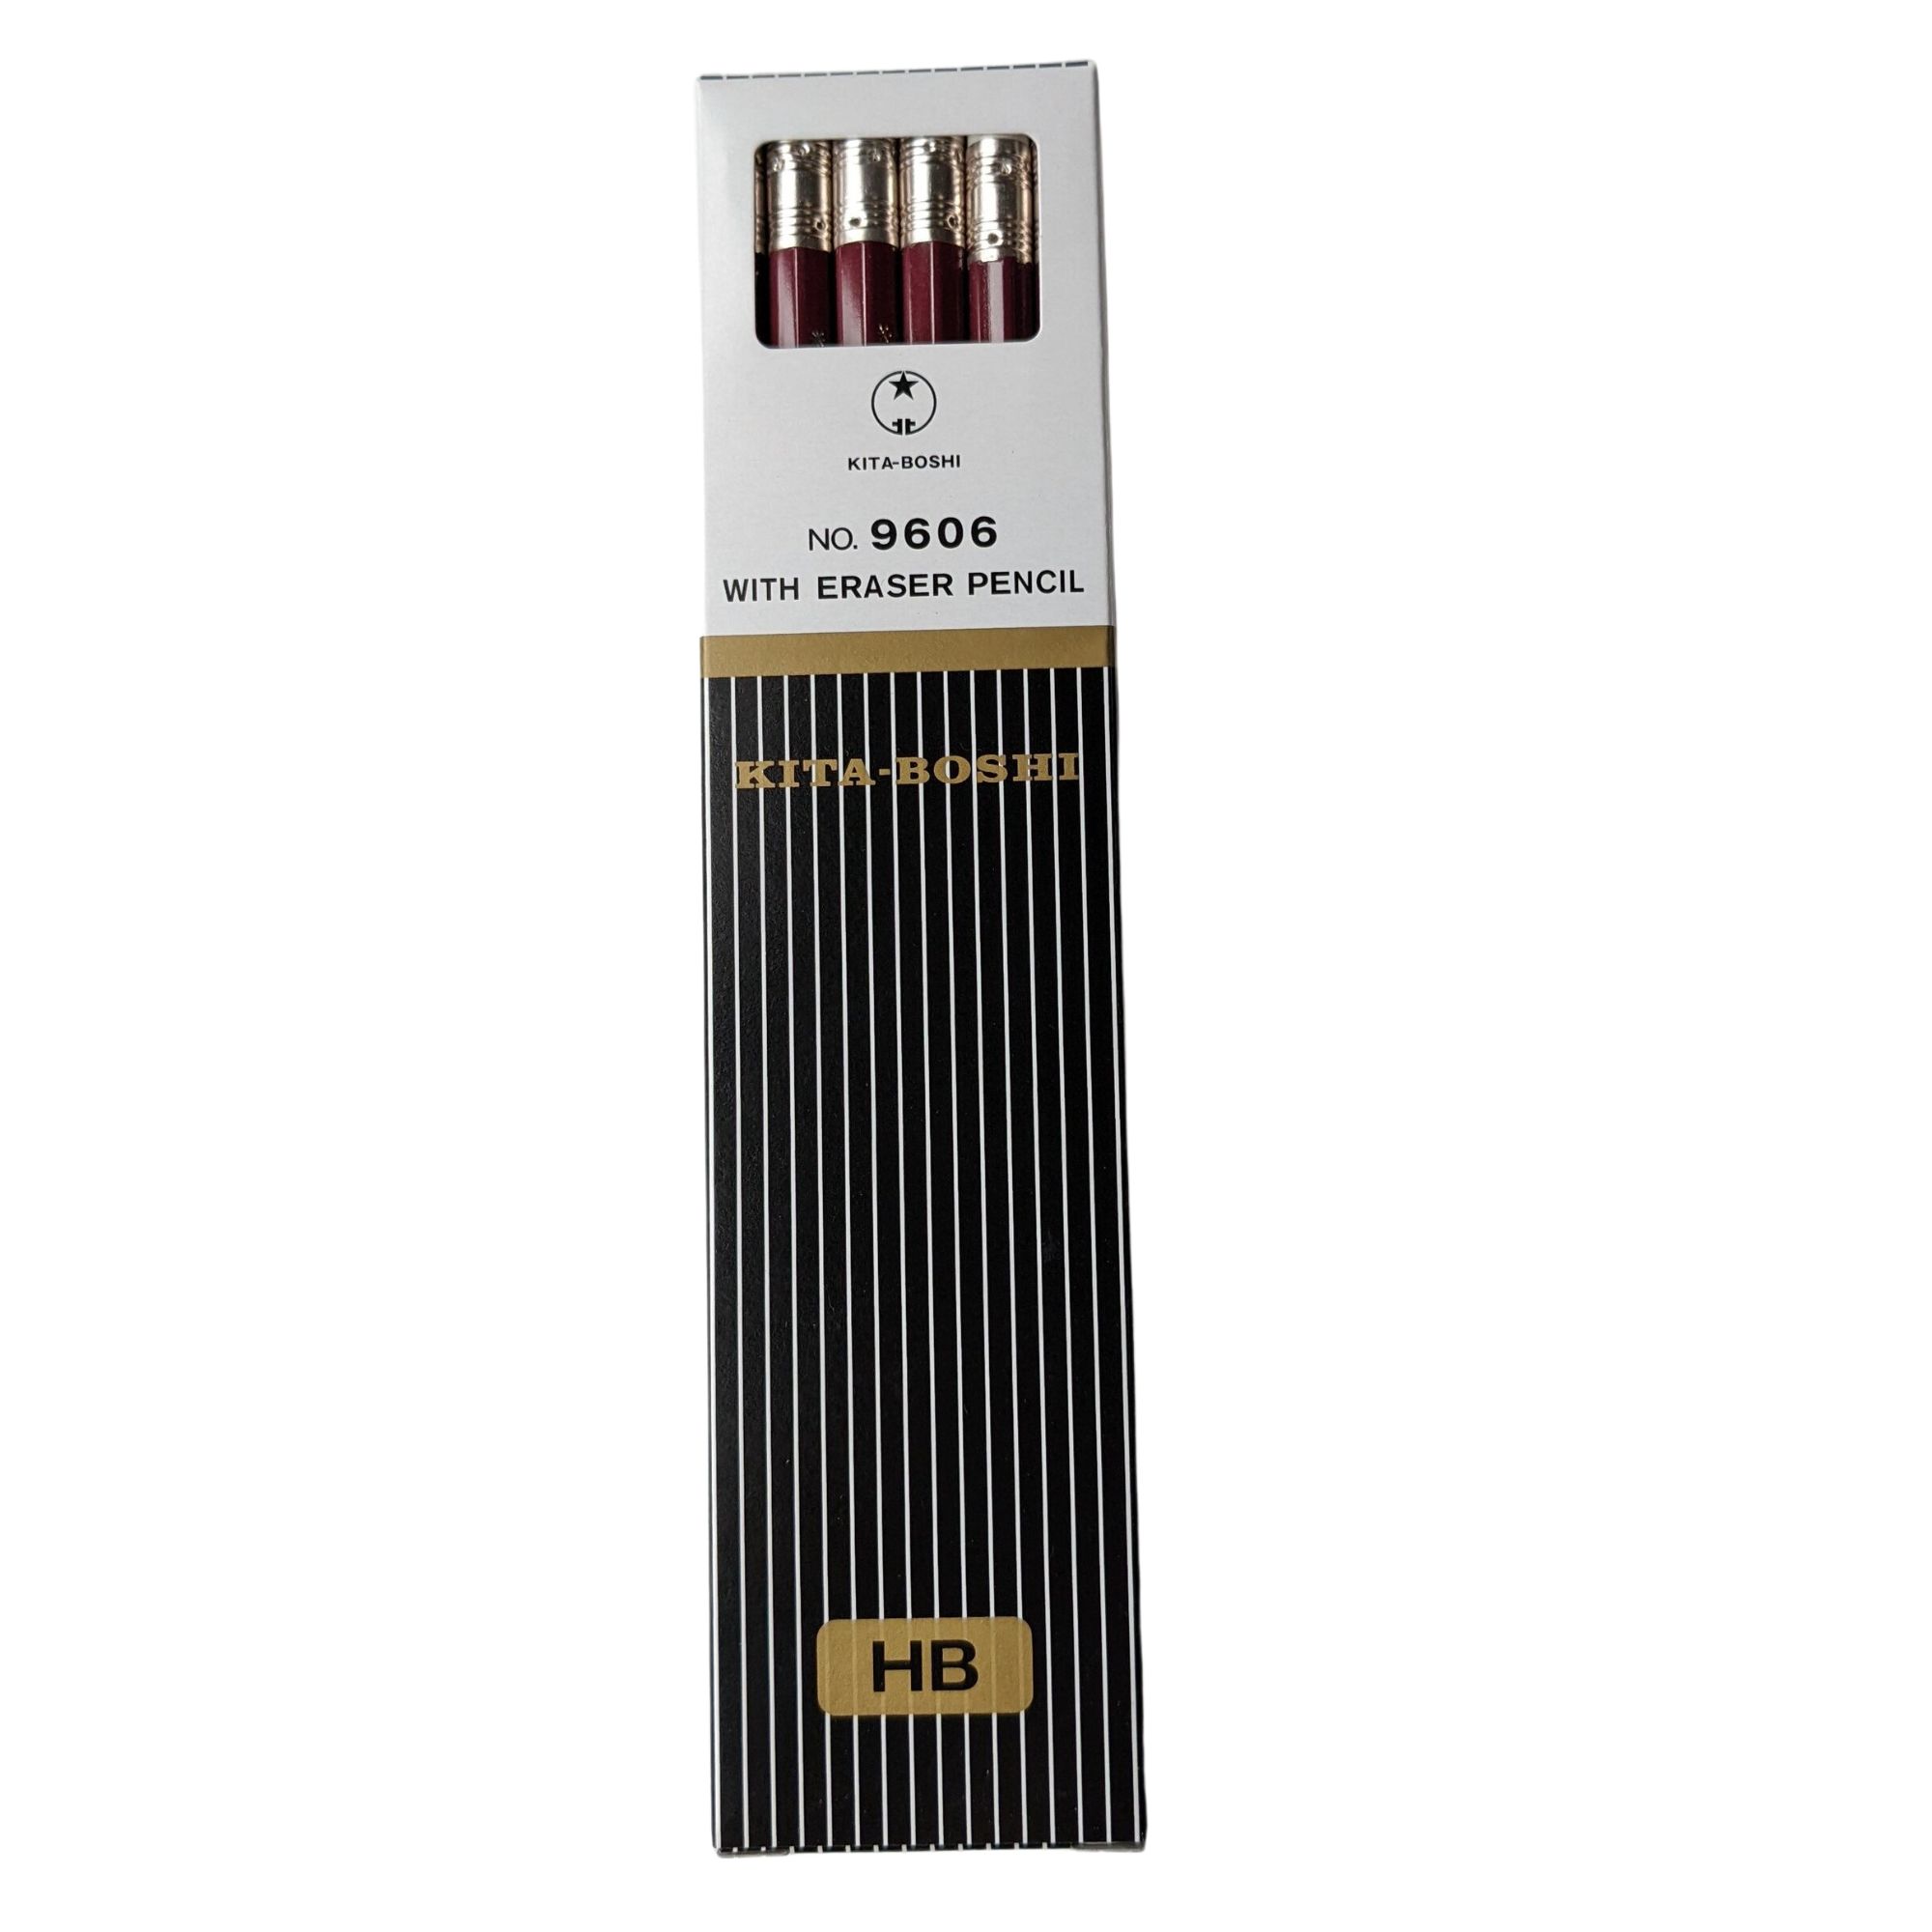 Kita-Boshi HB Pencil with Eraser